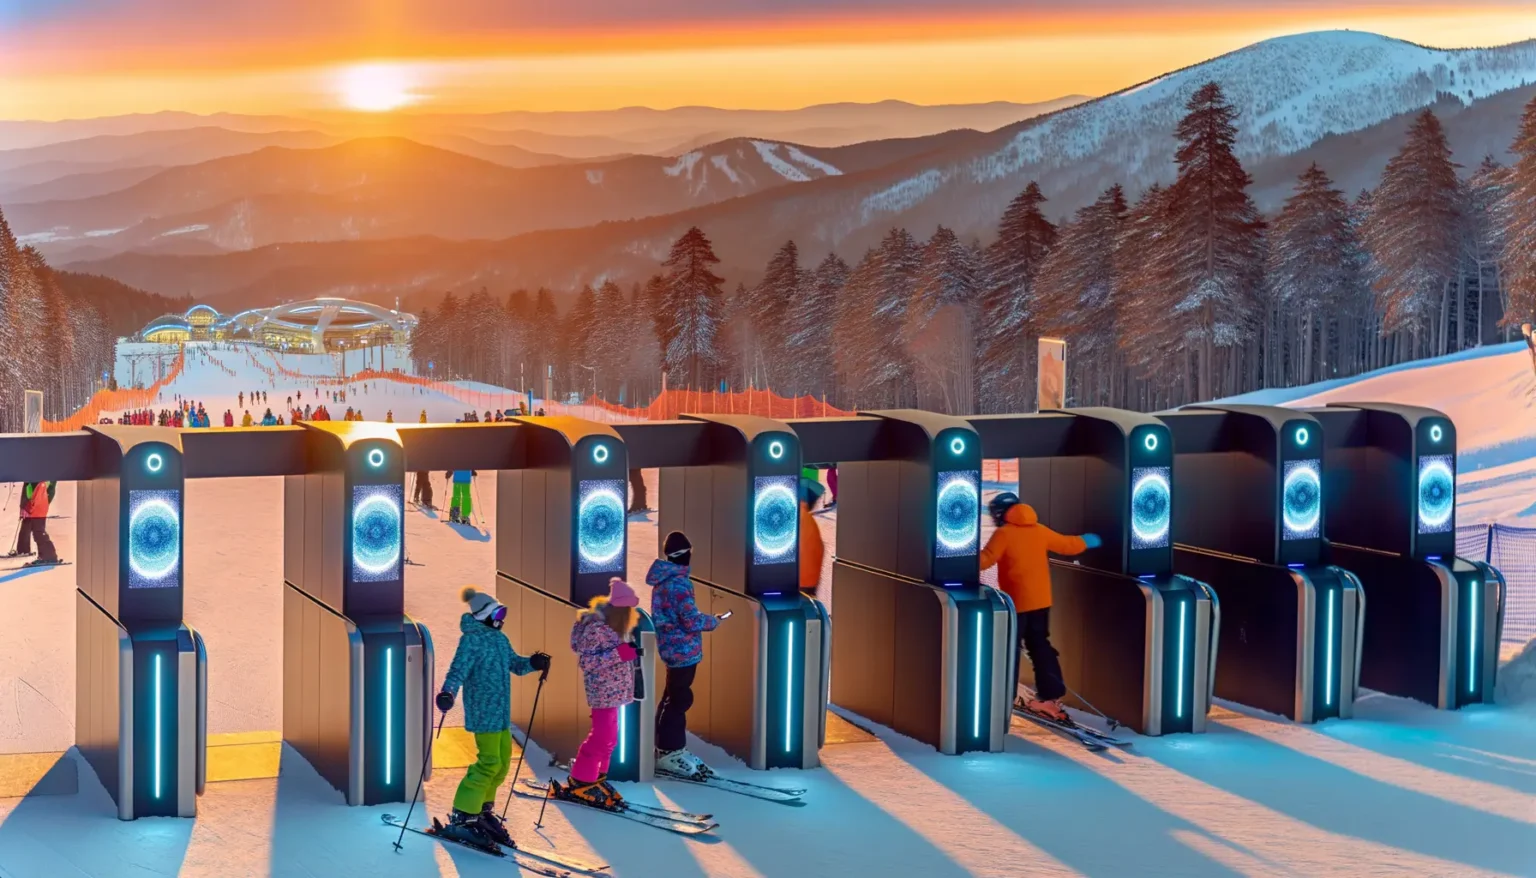 Skifahrer und Snowboarder stehen in einer Schlange an automatischen Zugangsschleusen zu einem Skilift, während im Hintergrund die Sonne über einem verschneiten Bergpanorama untergeht, was dem Himmel eine orange-rosarote Färbung verleiht.